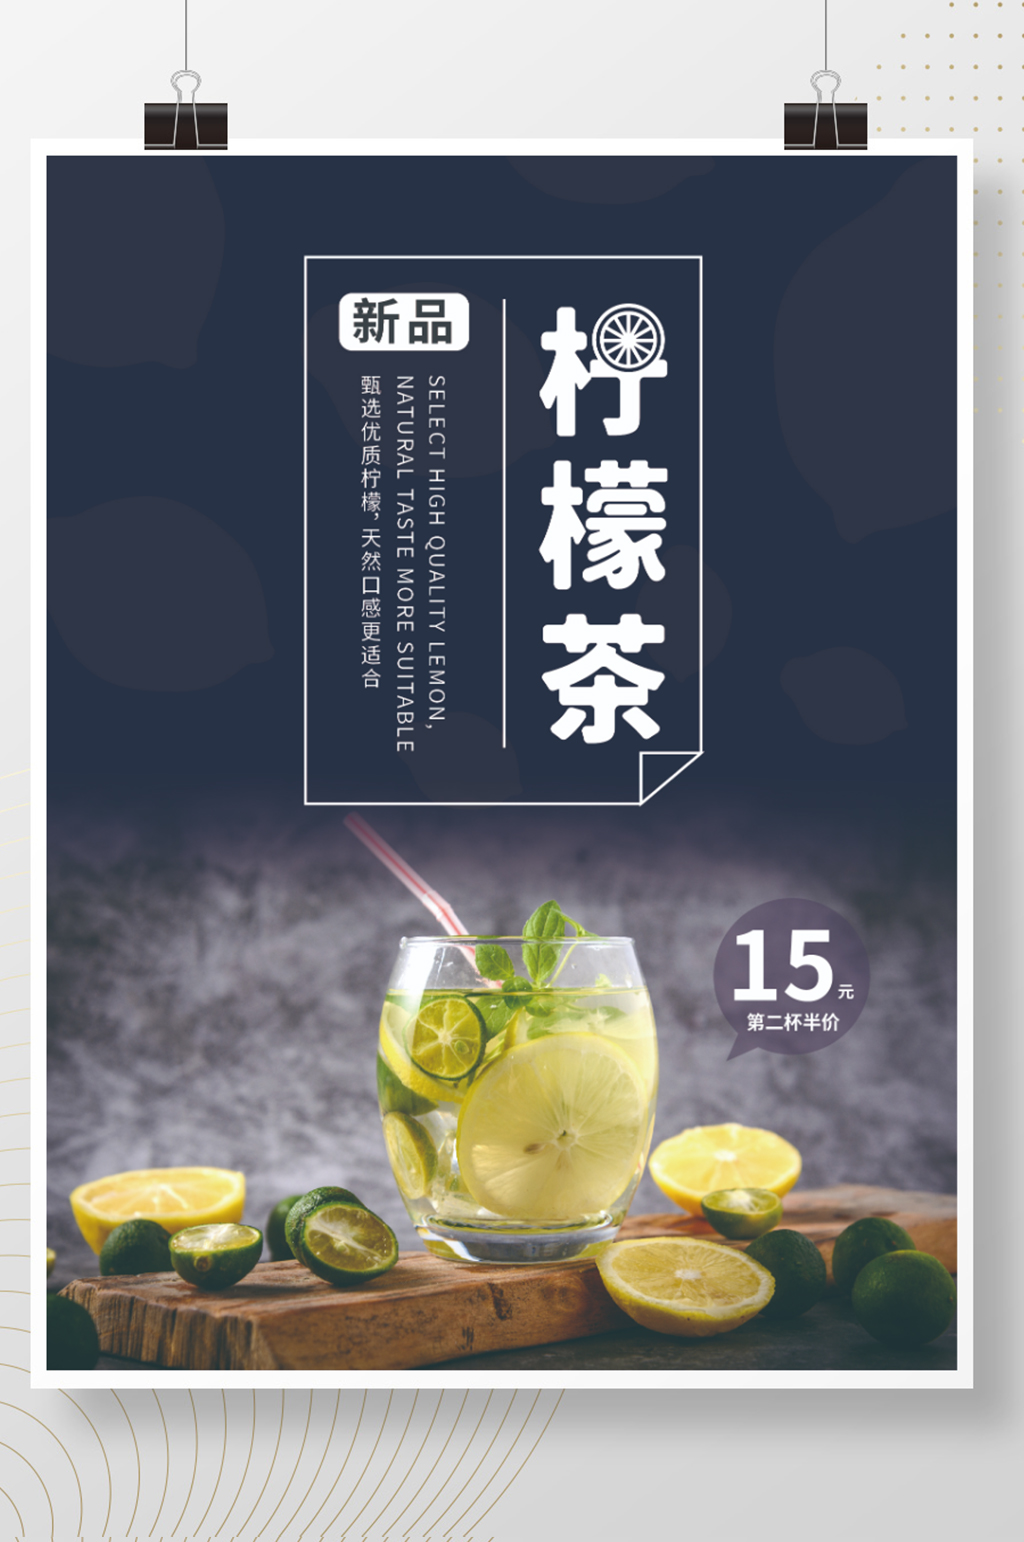 新品柠檬茶促销美食海报